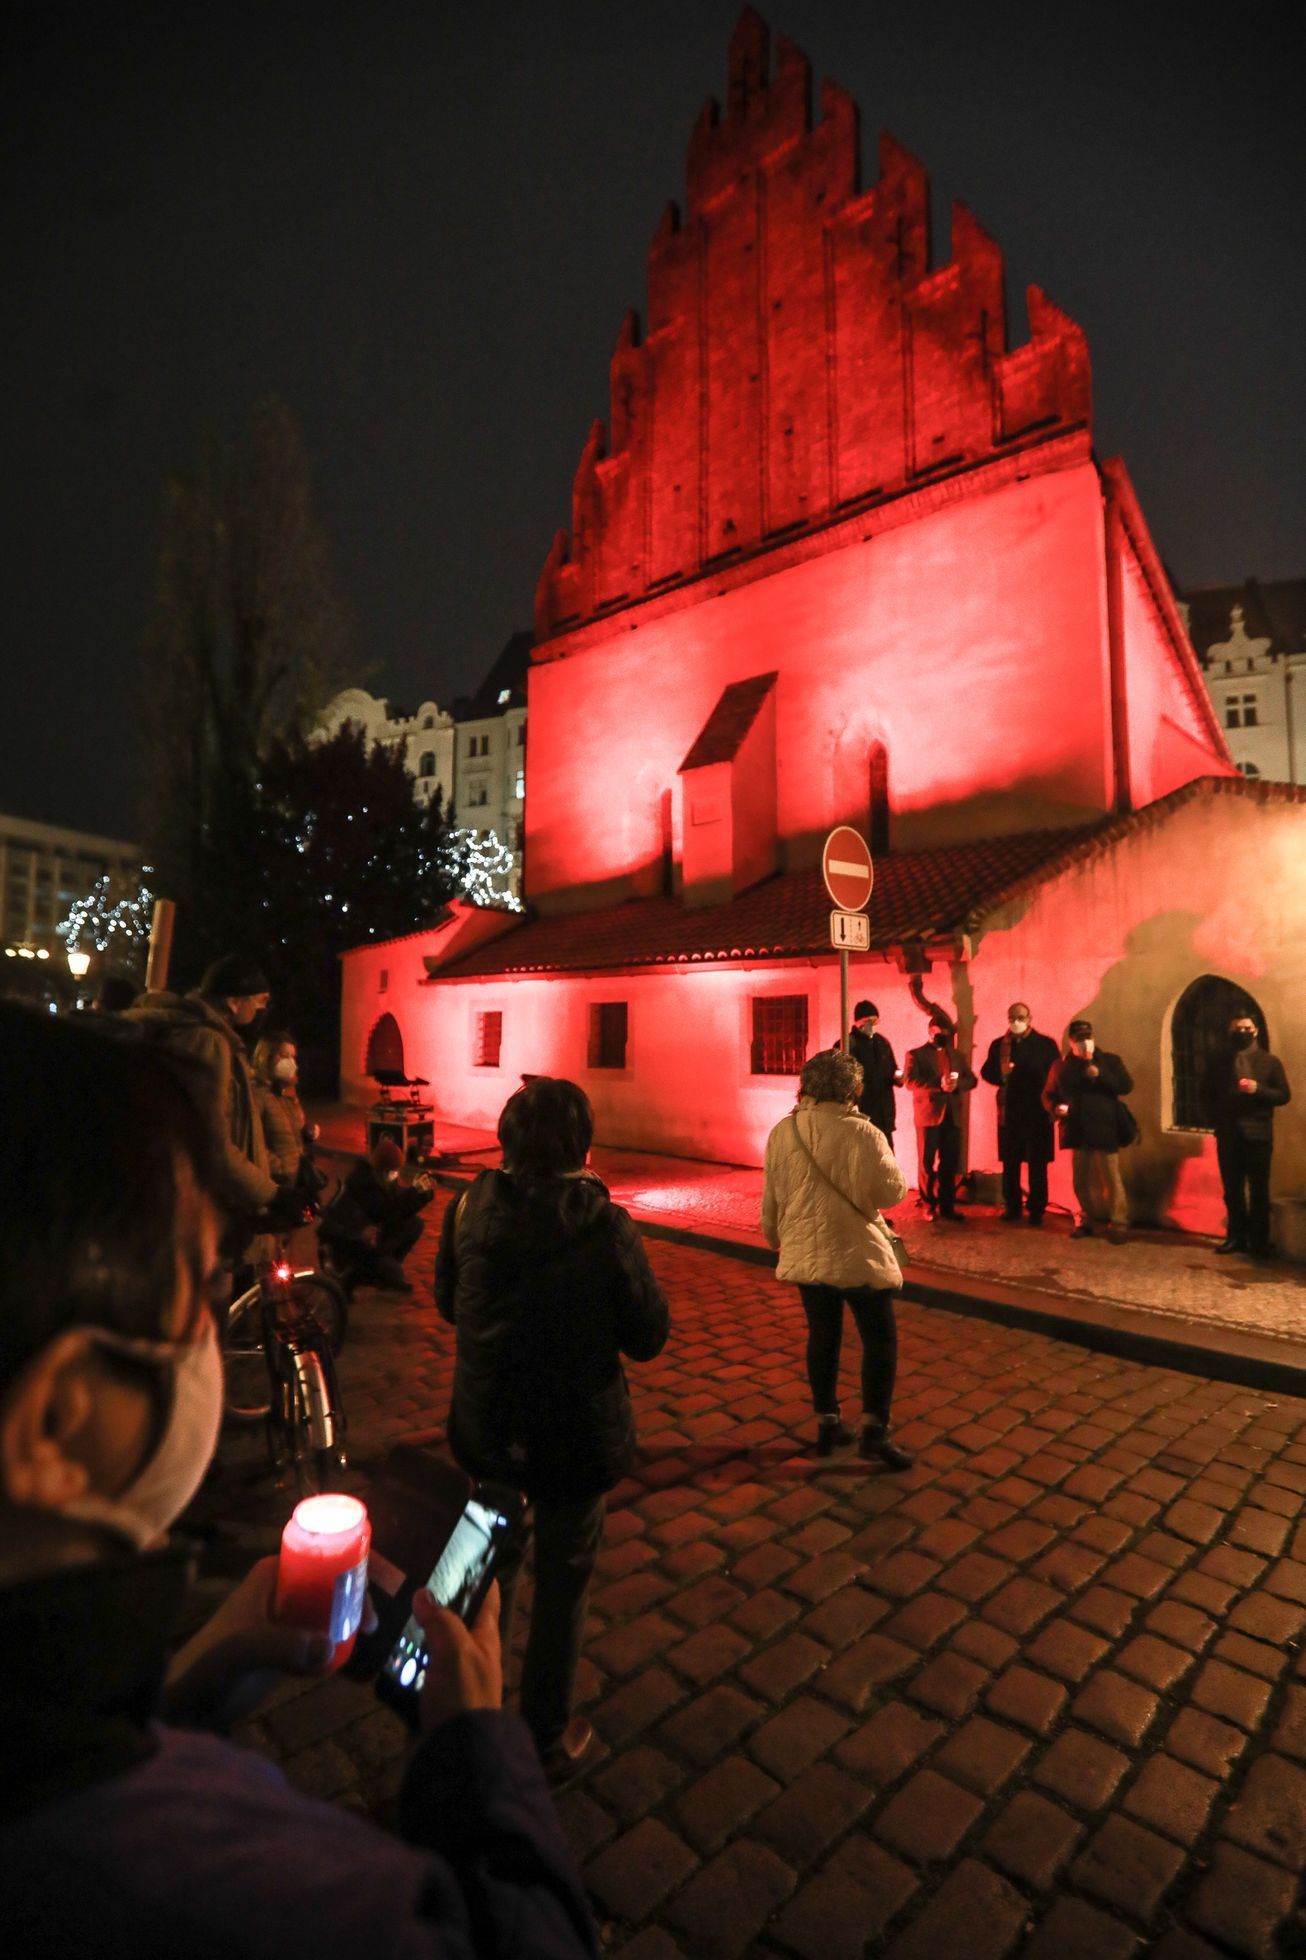 Červená středa - pochod kolem červeně nasvícených budov za lidi pronásledované pro svou víru, 25. 11. 2020